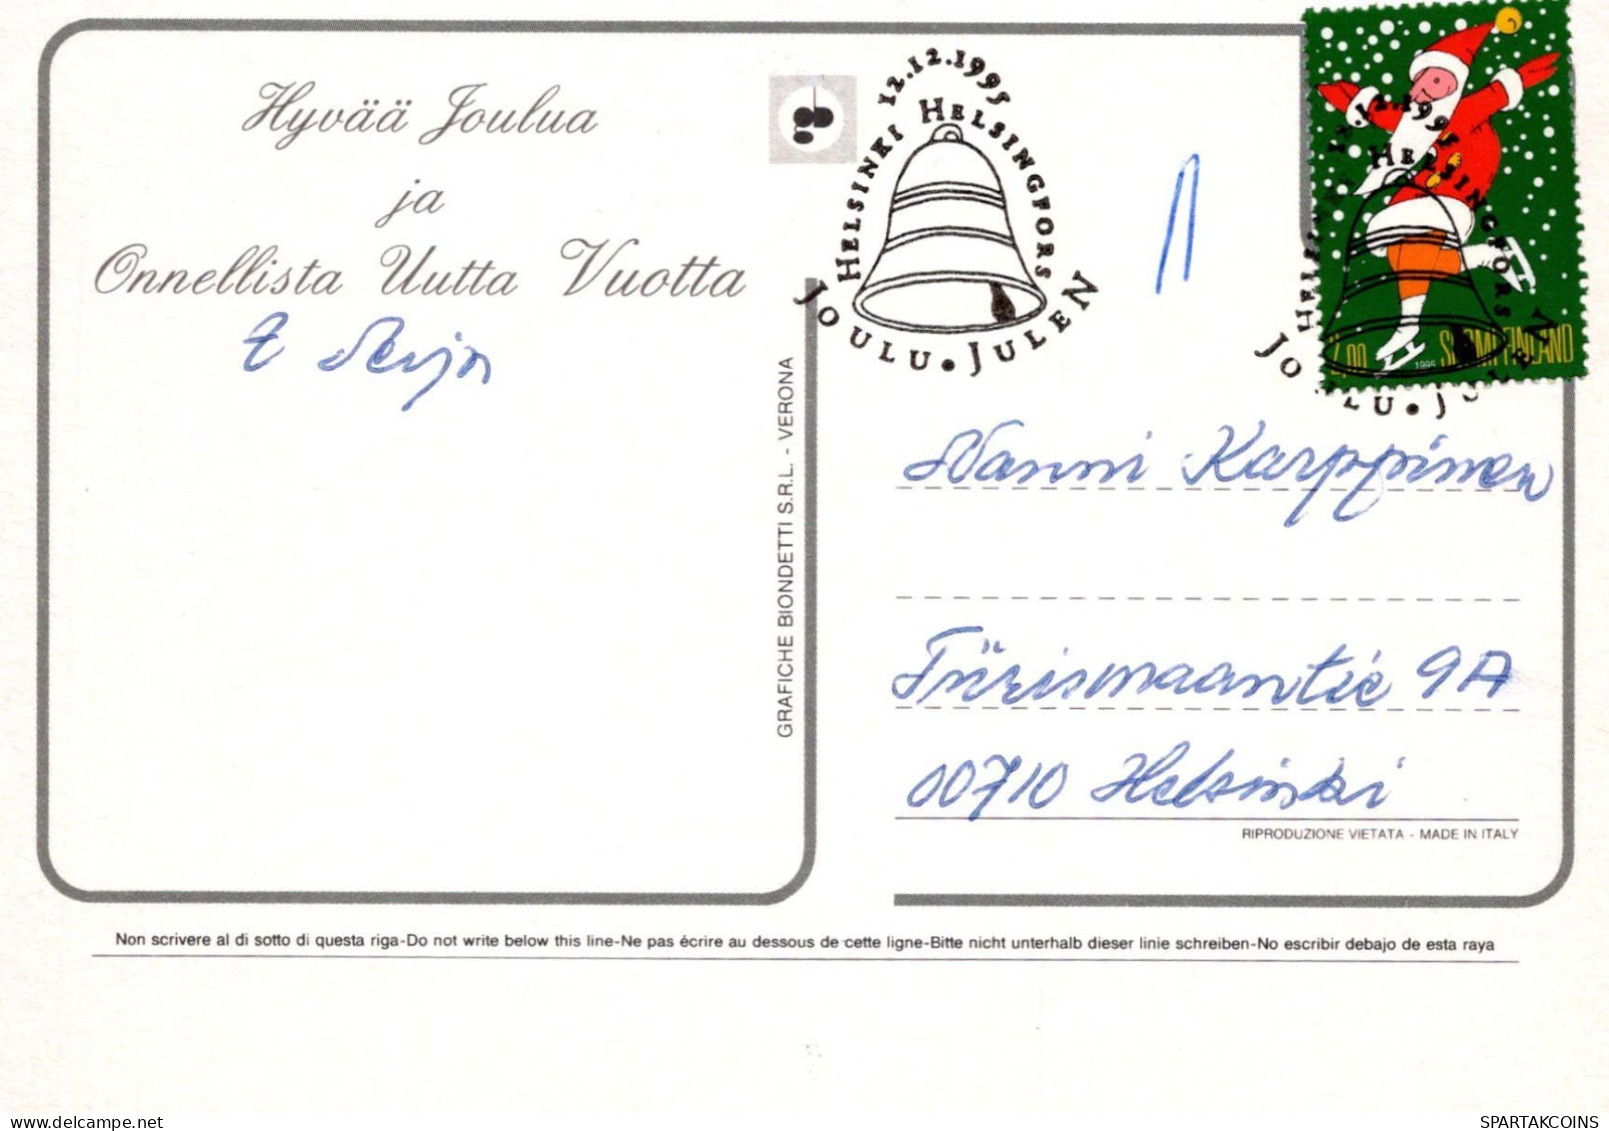 Jungfrau Maria Madonna Jesuskind Weihnachten Religion Vintage Ansichtskarte Postkarte CPSM #PBB996.A - Vierge Marie & Madones